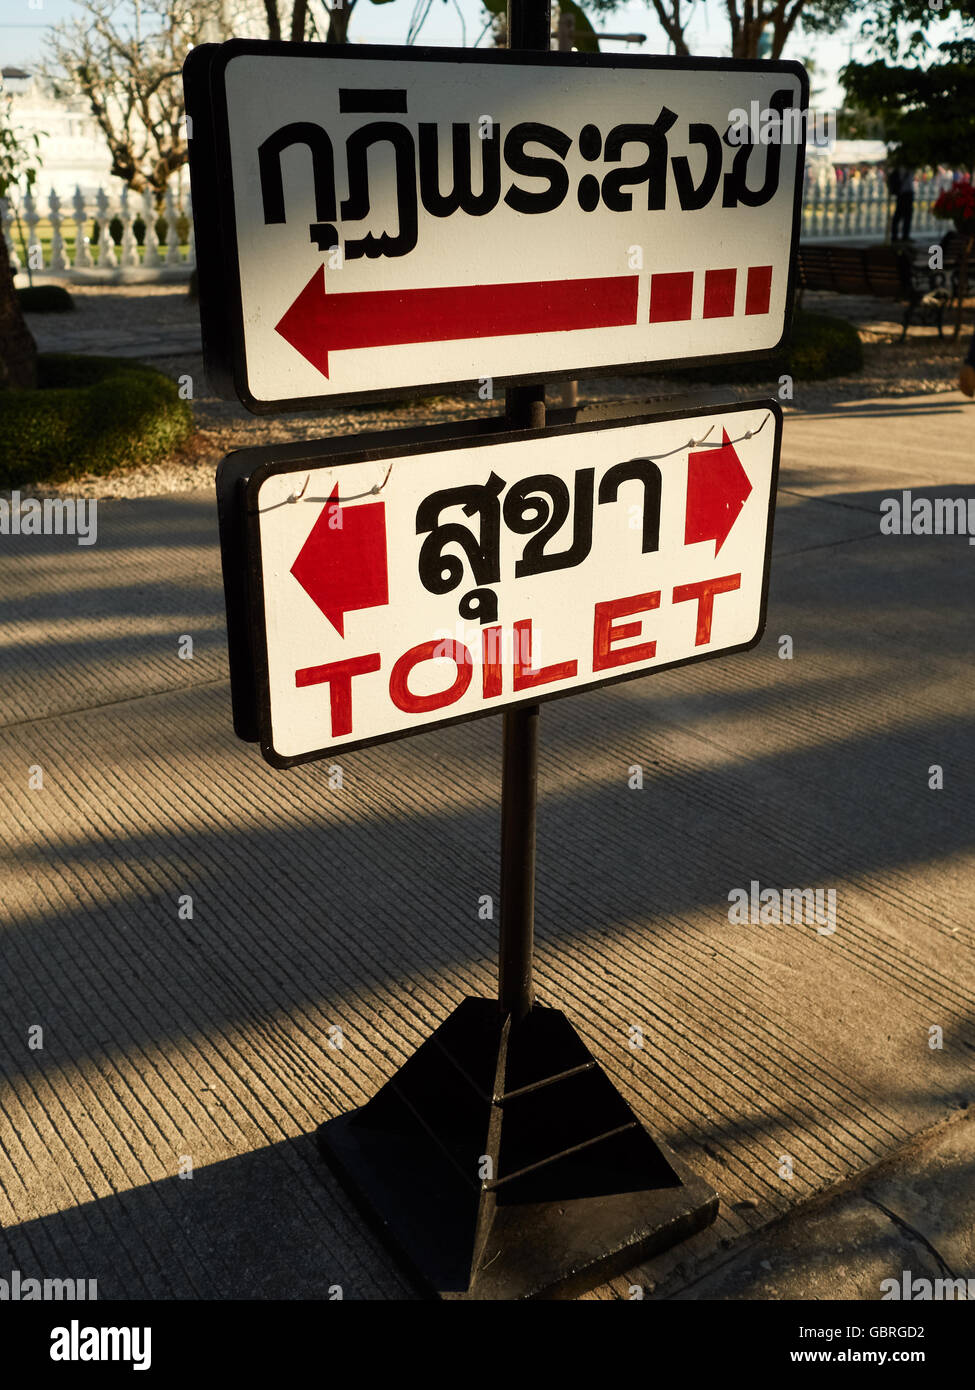 Inscrivez-toilettes en anglais et la langue thaï Banque D'Images